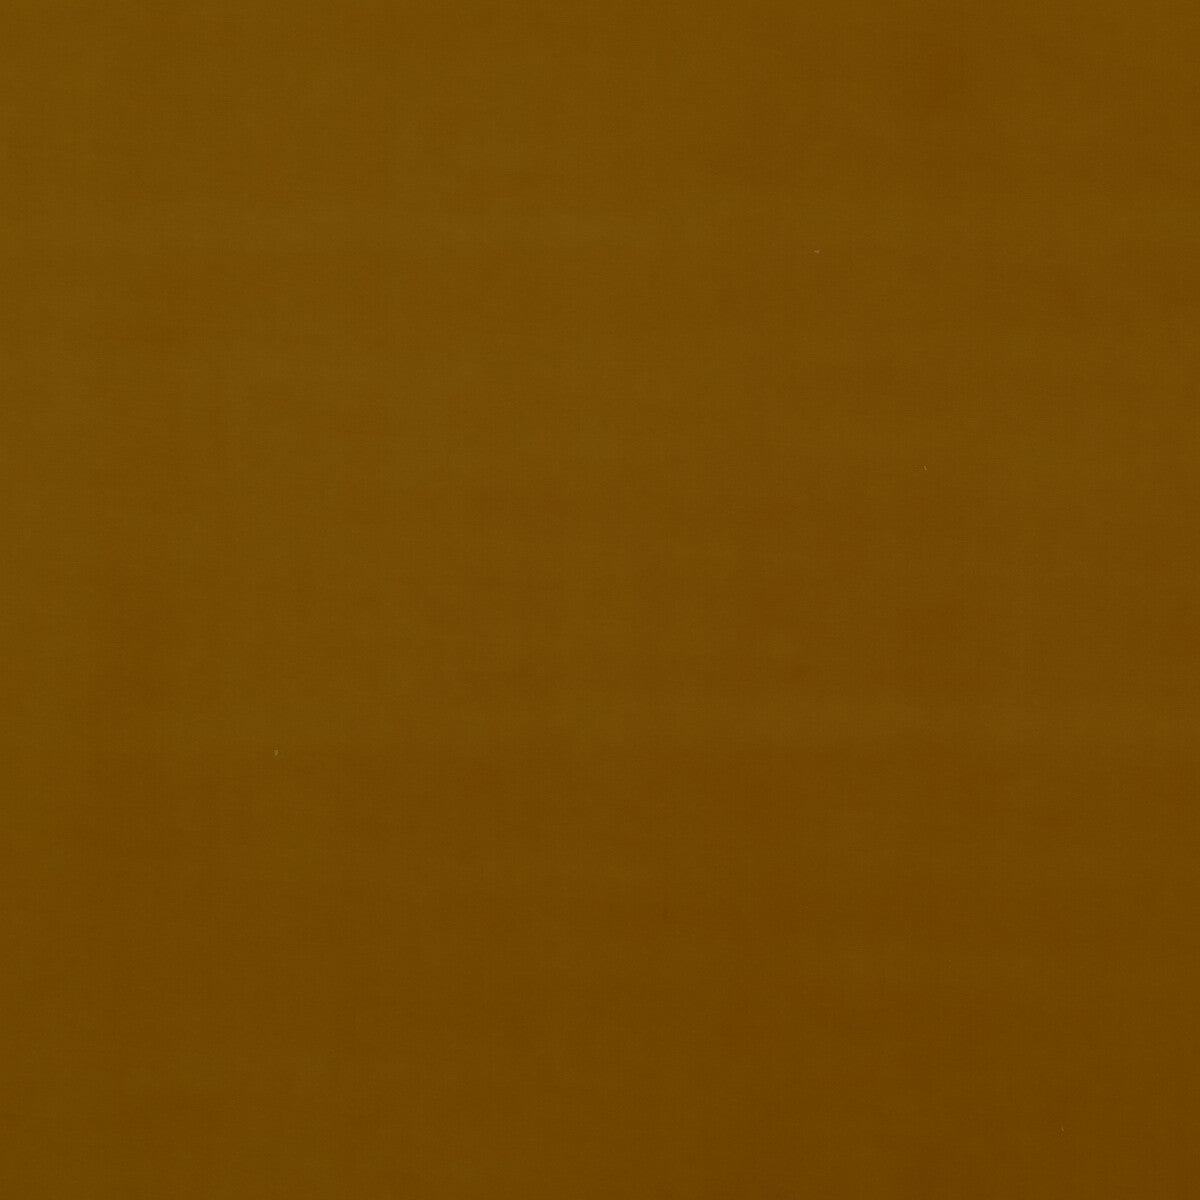 Baker House Velvet fabric in ochre color - pattern BF10838.840.0 - by G P &amp; J Baker in the Baker House Velvet collection